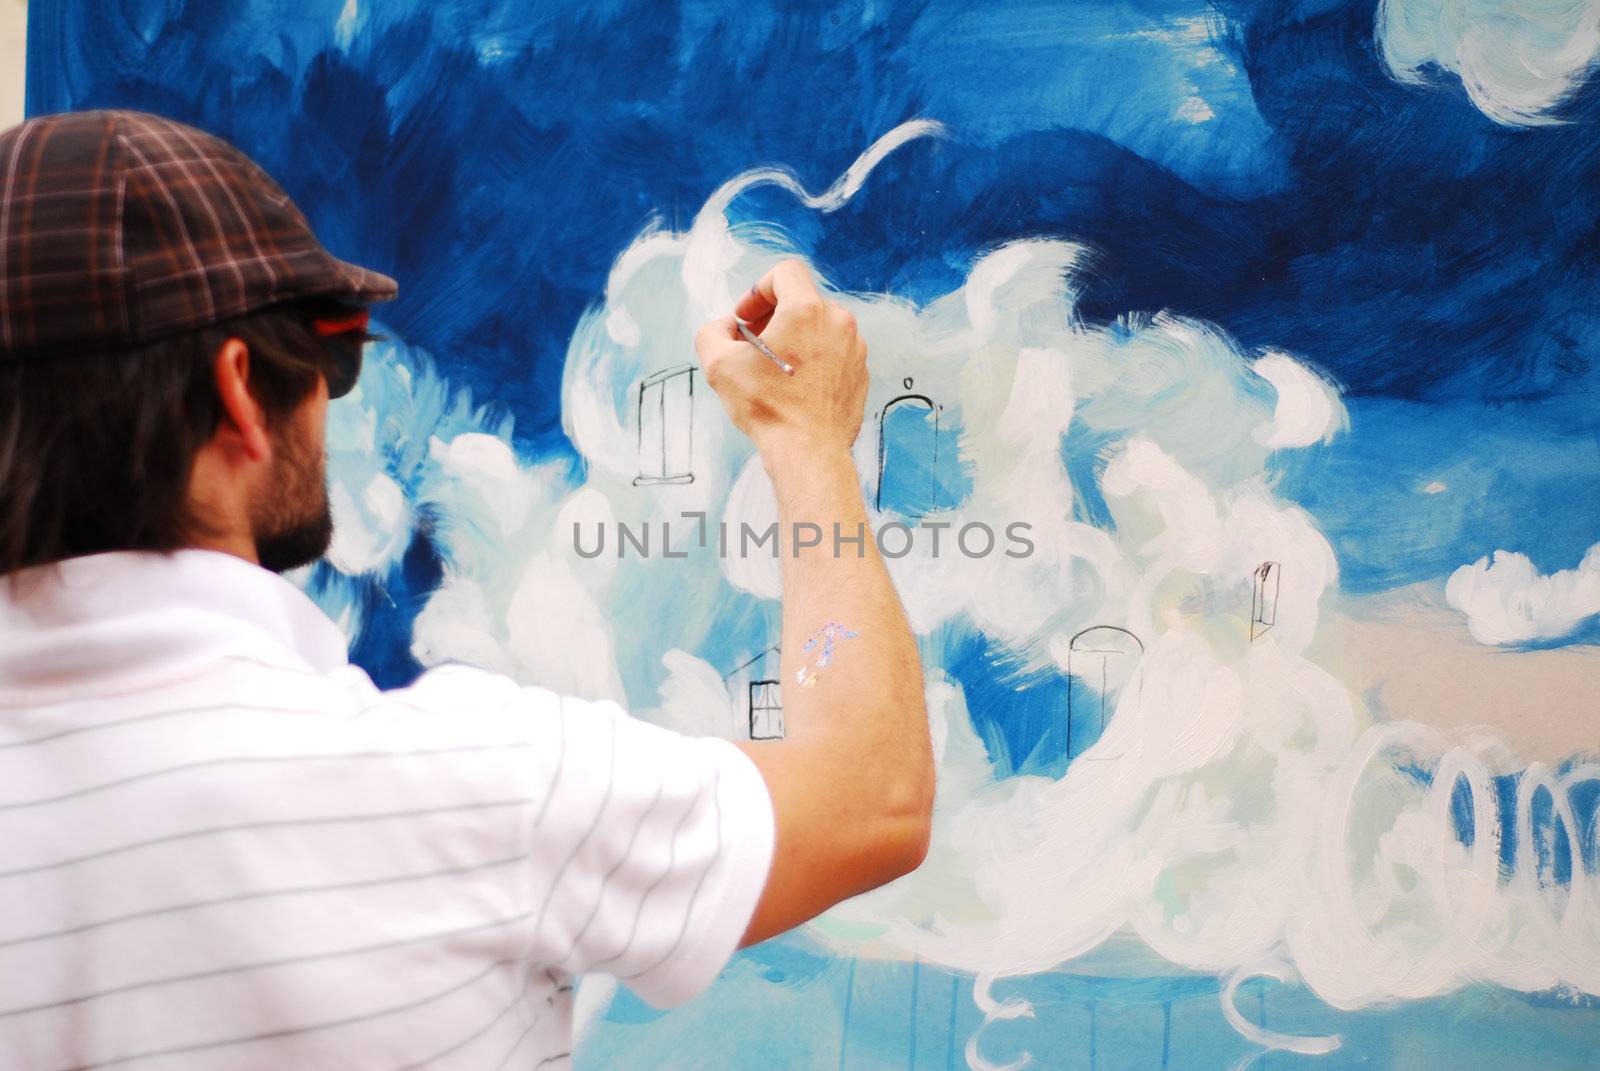 Man painting by tony4urban